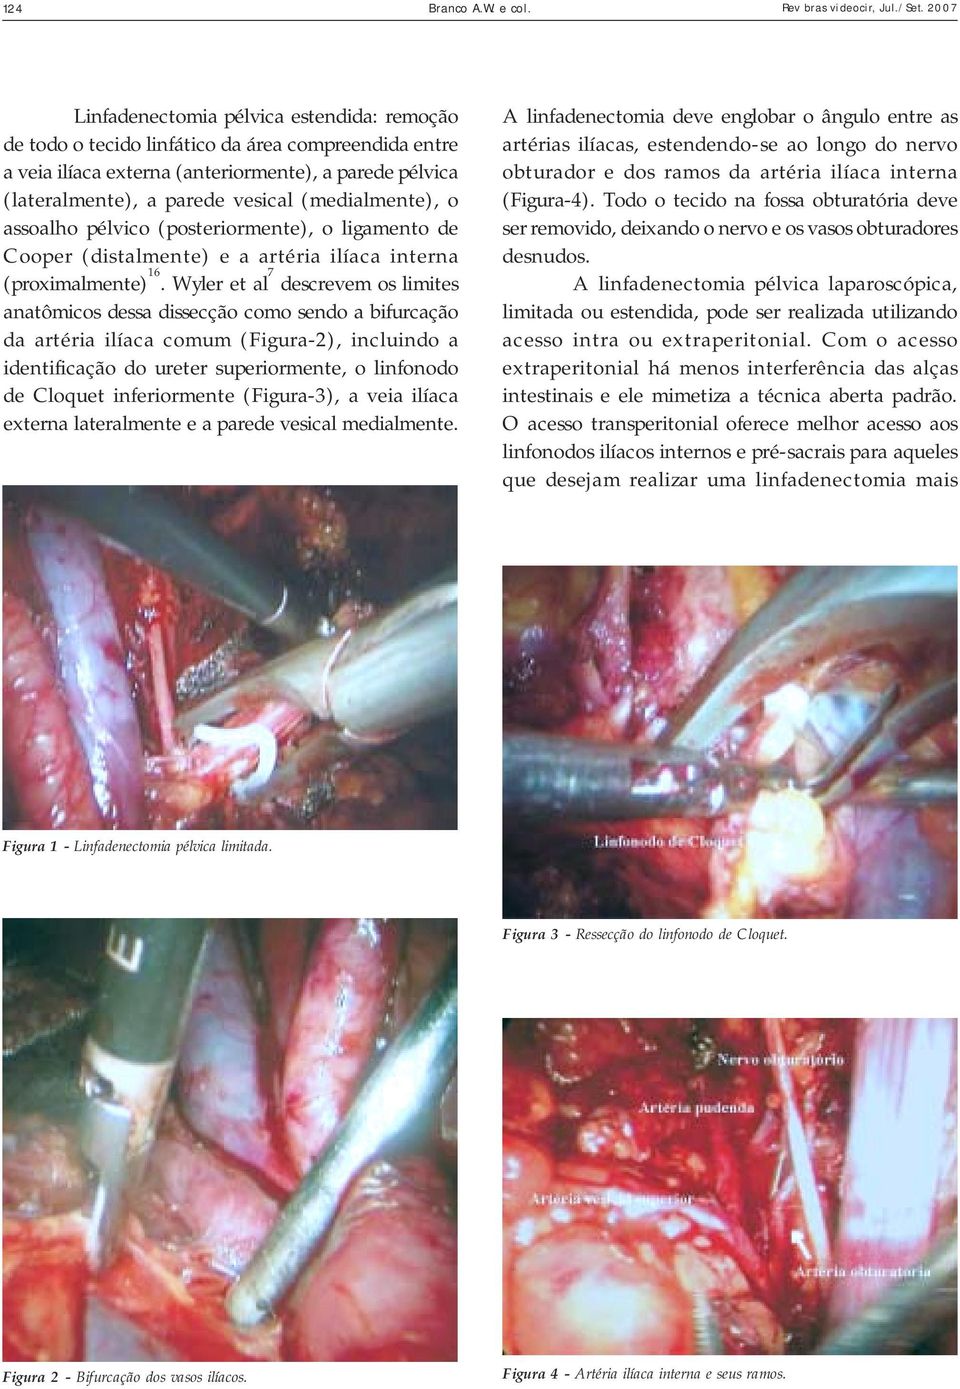 (medialmente), o assoalho pélvico (posteriormente), o ligamento de Cooper (distalmente) e a artéria ilíaca interna (proximalmente) 16.